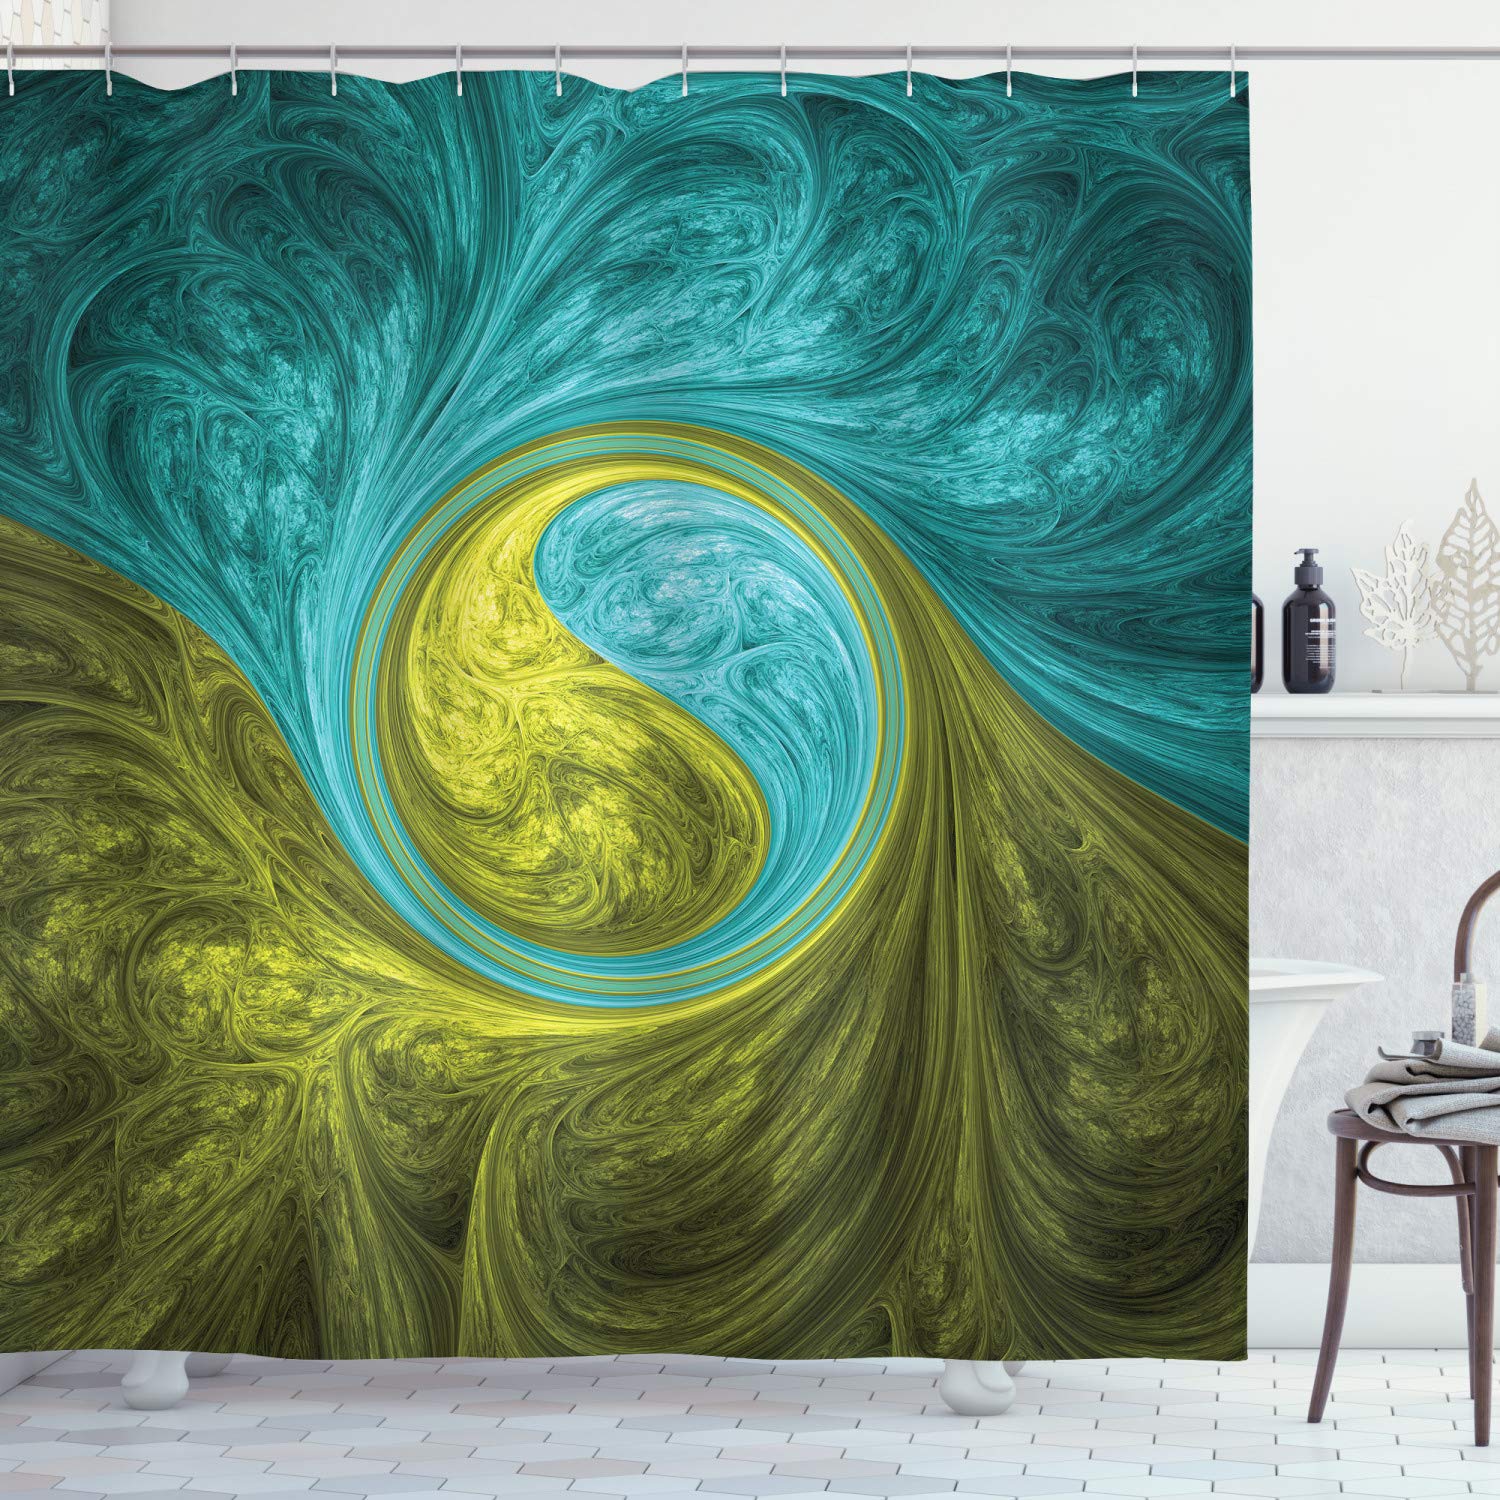 Cortina de ducha de agujas, diseño psicodélico de la espiral oriental motivo lateral soleado, cortinas de baño impermeables decoración de baño con ganchos